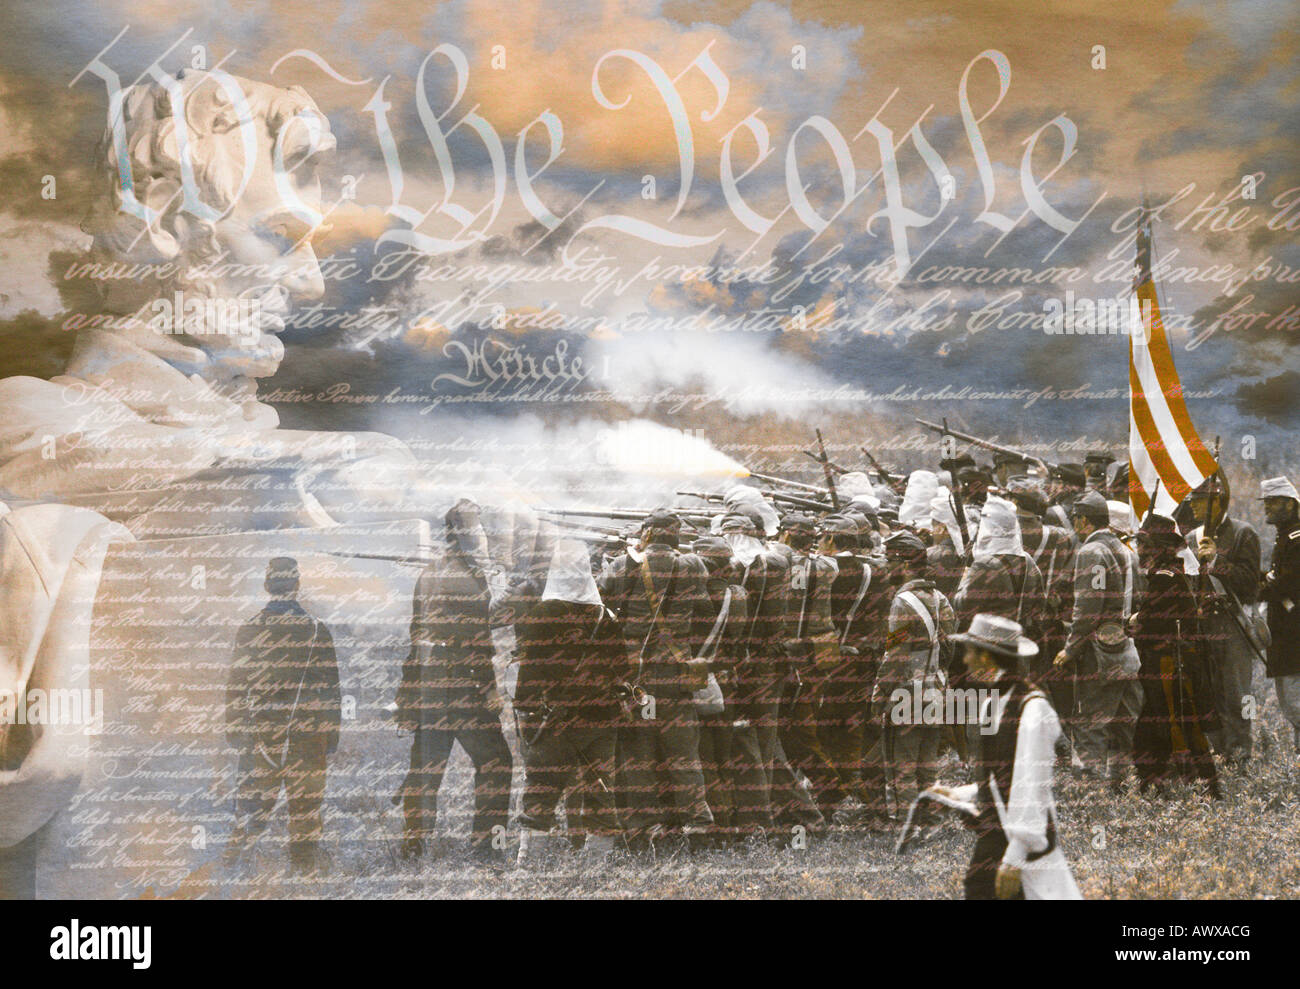 Imagen compuesta de Lincoln Memorial y los soldados de la Guerra Civil en la batalla con la Constitución de los Estados Unidos Foto de stock